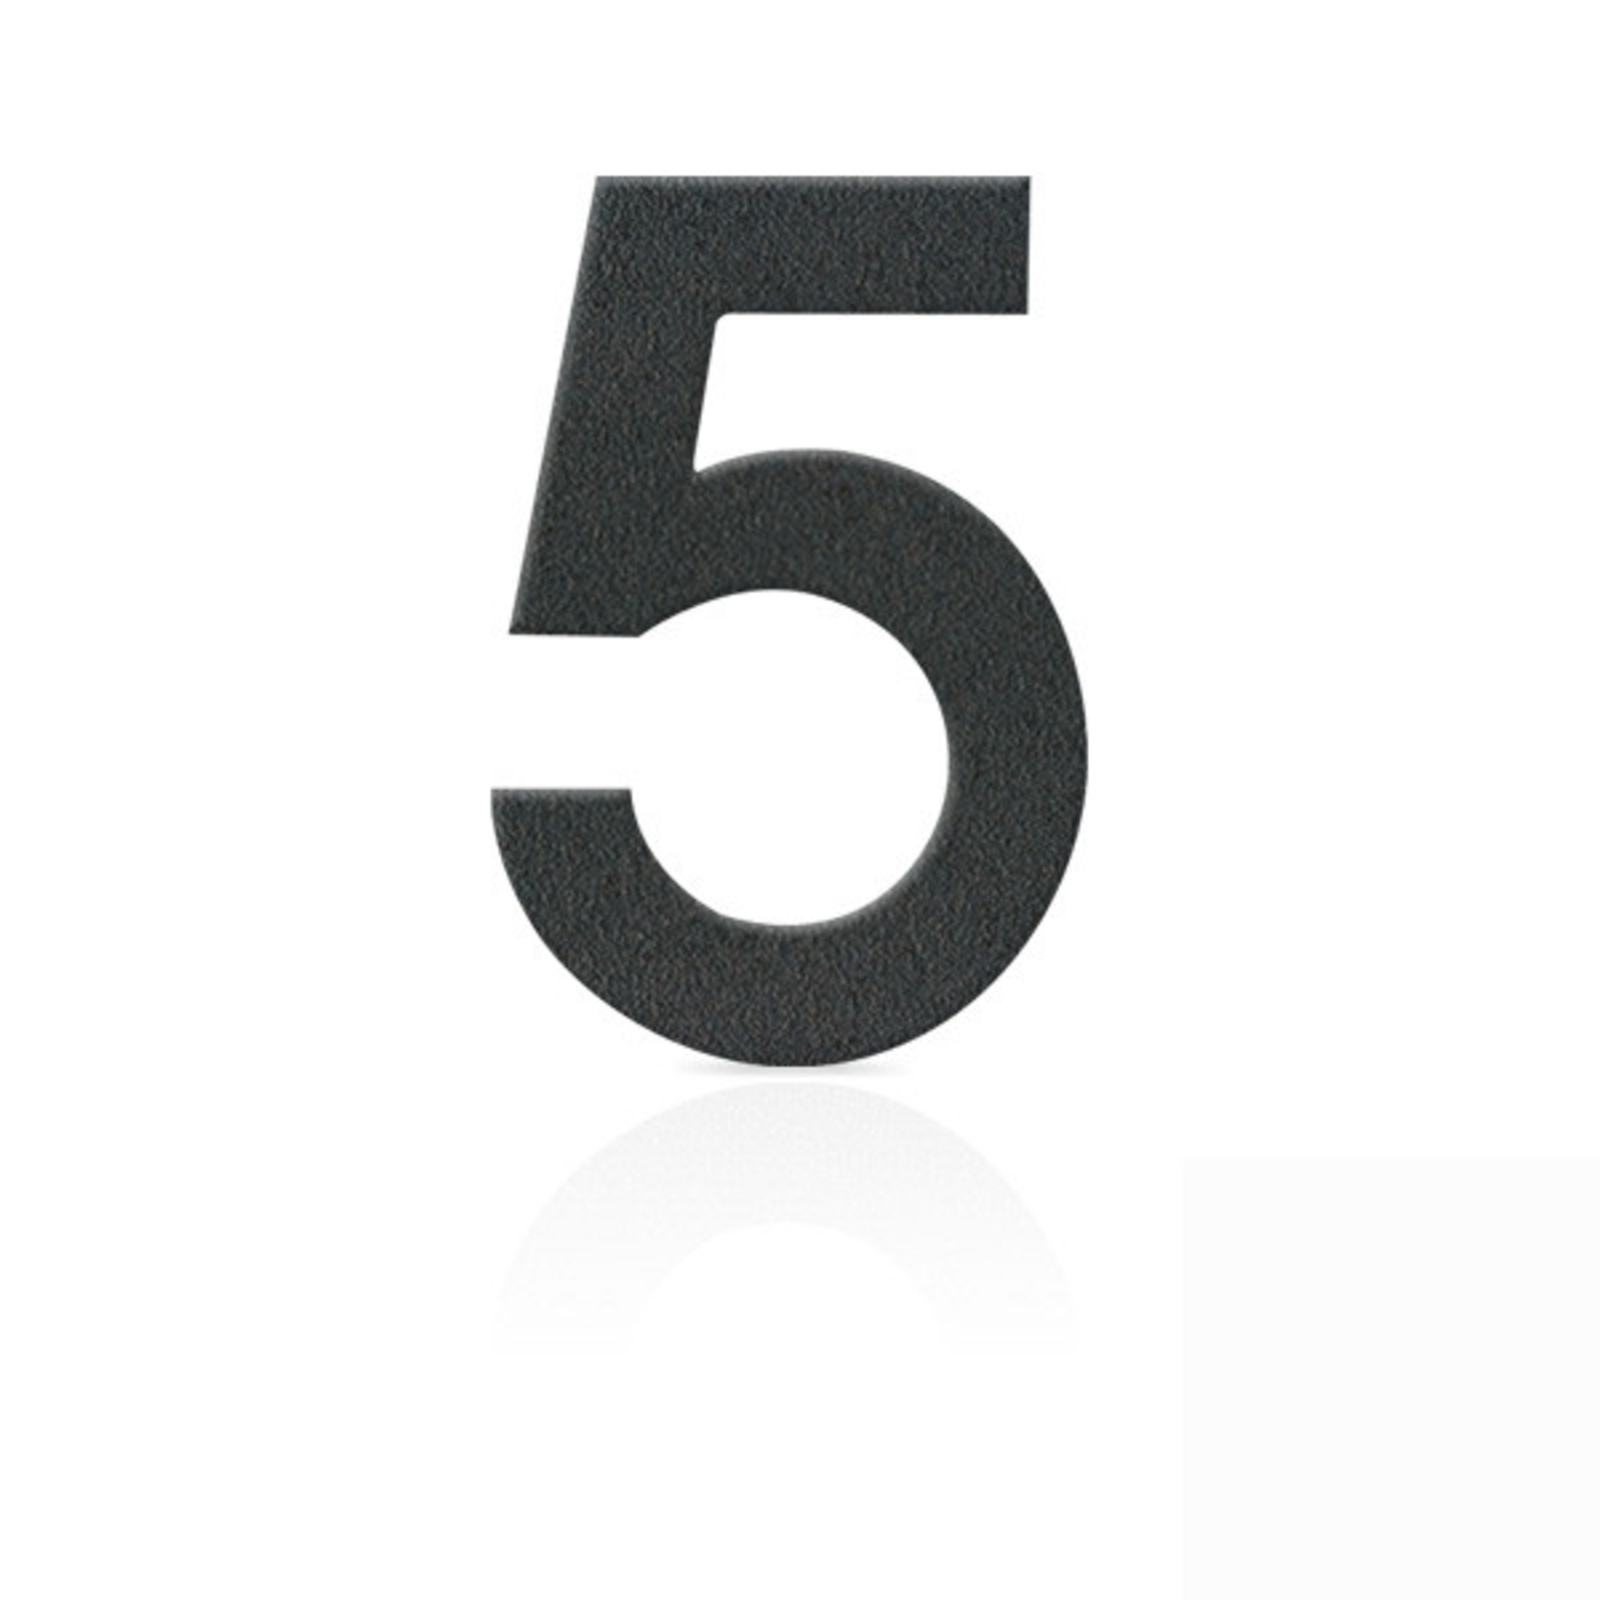 Nerezová domovní čísla číslice 5, grafit šedý